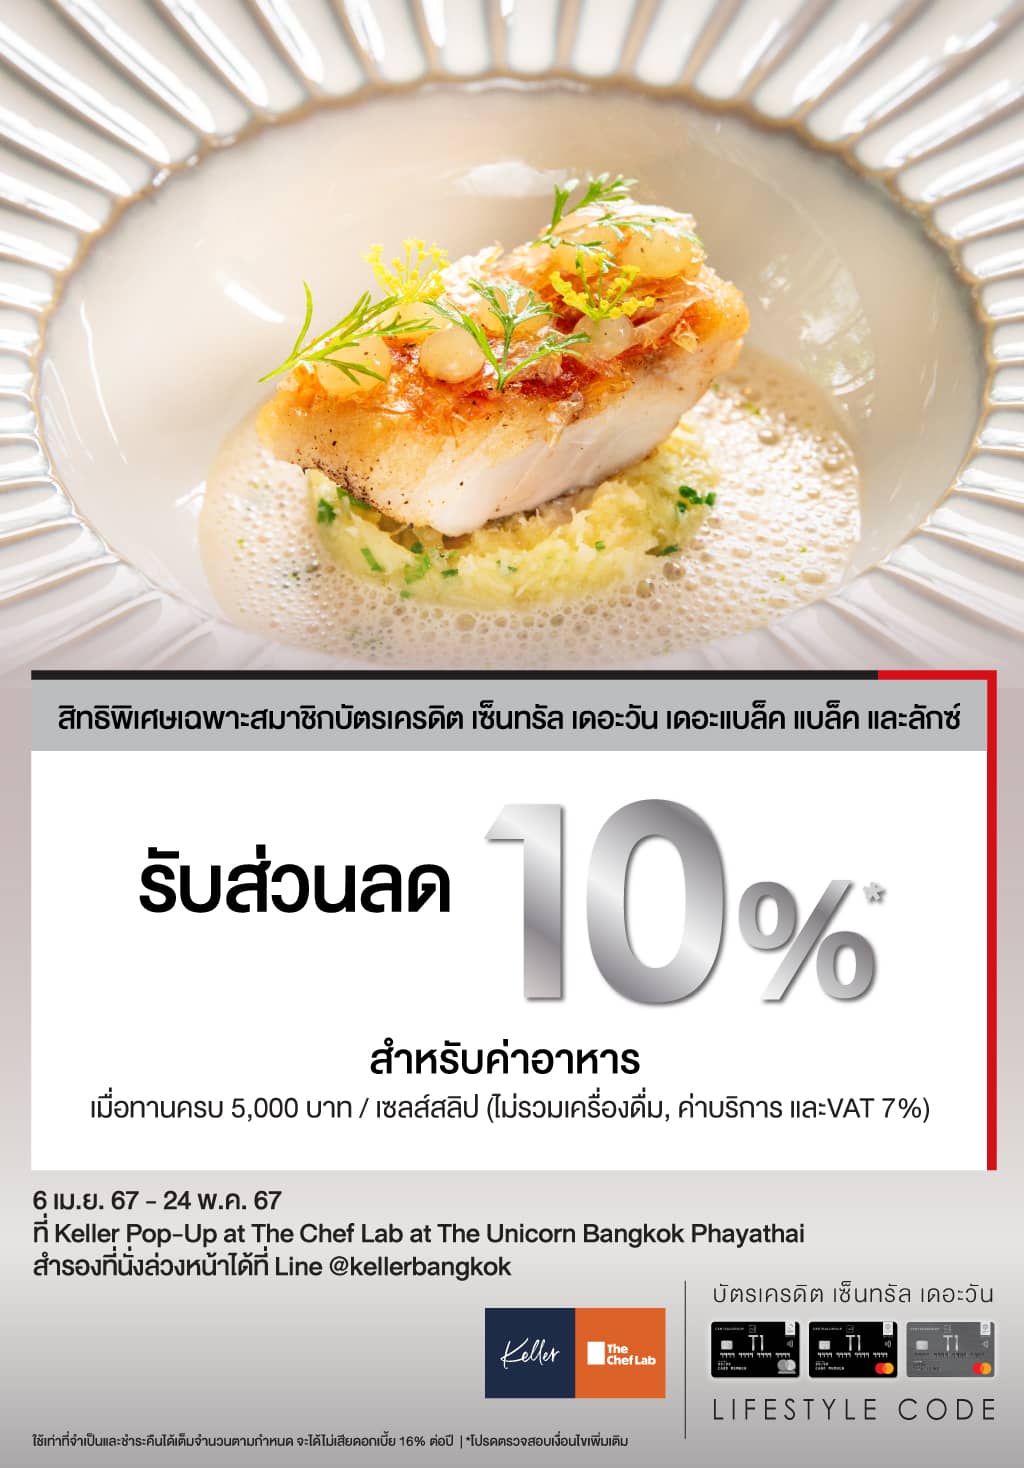 รับส่วนลด 10%* สำหรับค่าอาหาร ที่ Keller Pop-Up at The Chef Lab at The Unicorn Bangkok Phayathai  | บัตรเครดิต เติมน้ำมัน | สิทธิประโยชน์บัตรเครดิต | บัตรเครดิต ผ่อน 0% | บัตรเครดิต ใช้ต่างประเทศ | บัตรเครดิต ท่องเที่ยว | สินเชื่อส่วนบุคคล